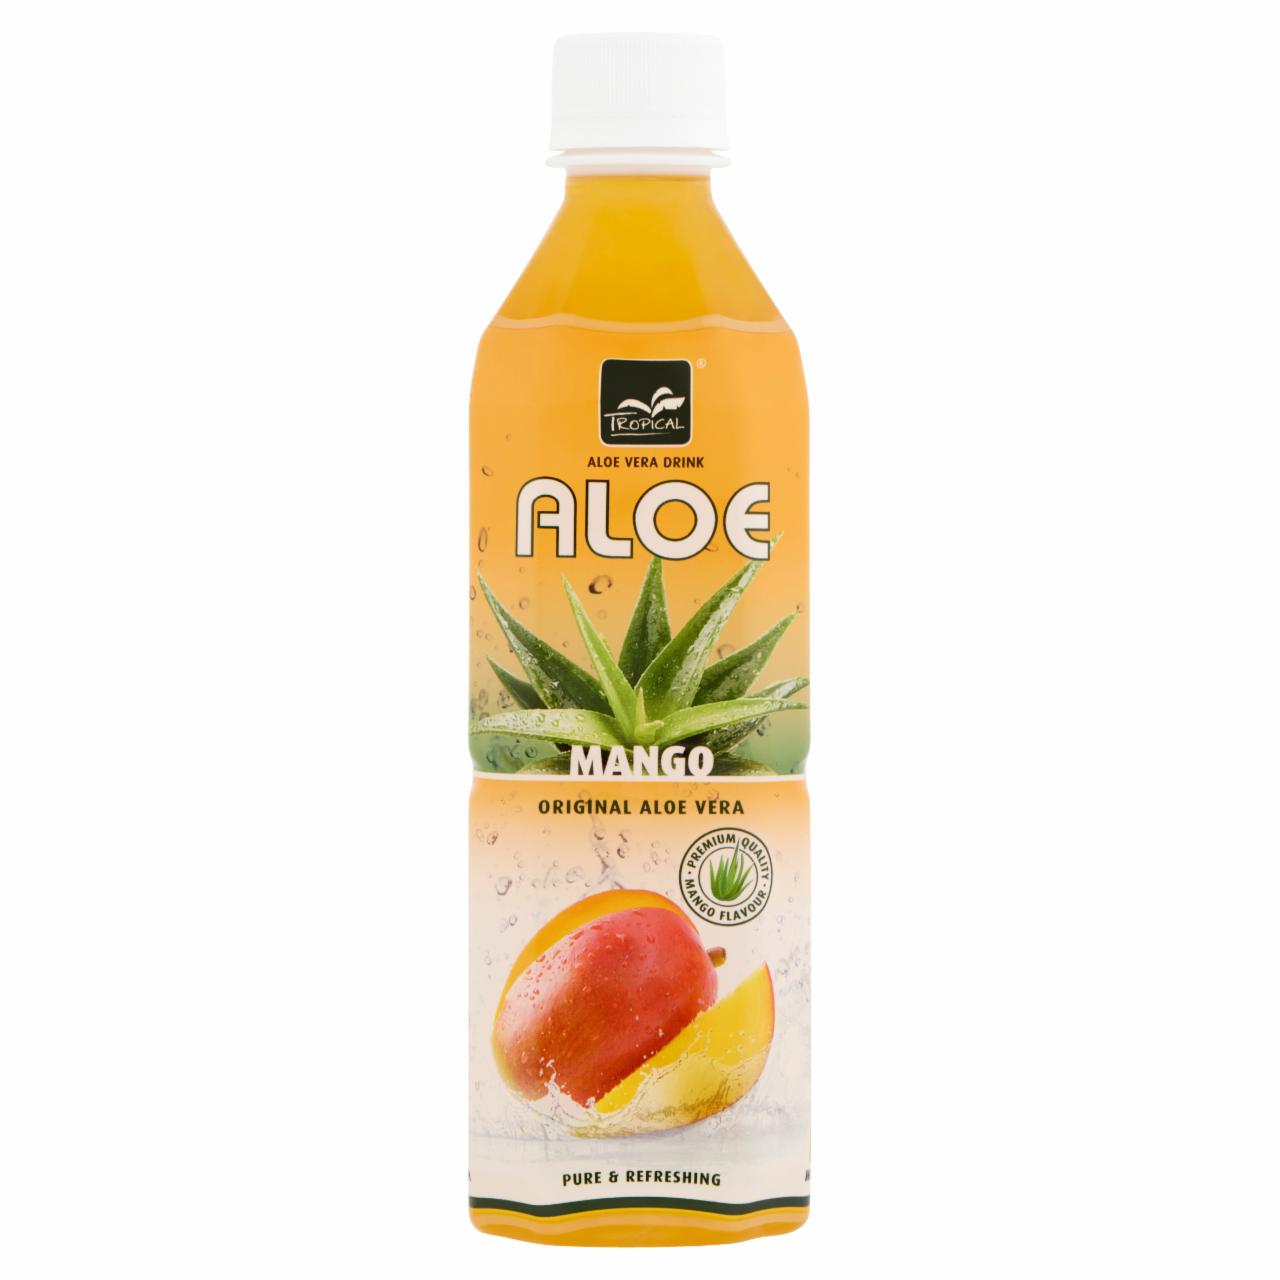 Képek - Tropical mangó ízesítésű szénsavmentes üdítőital aloe verával 500 ml